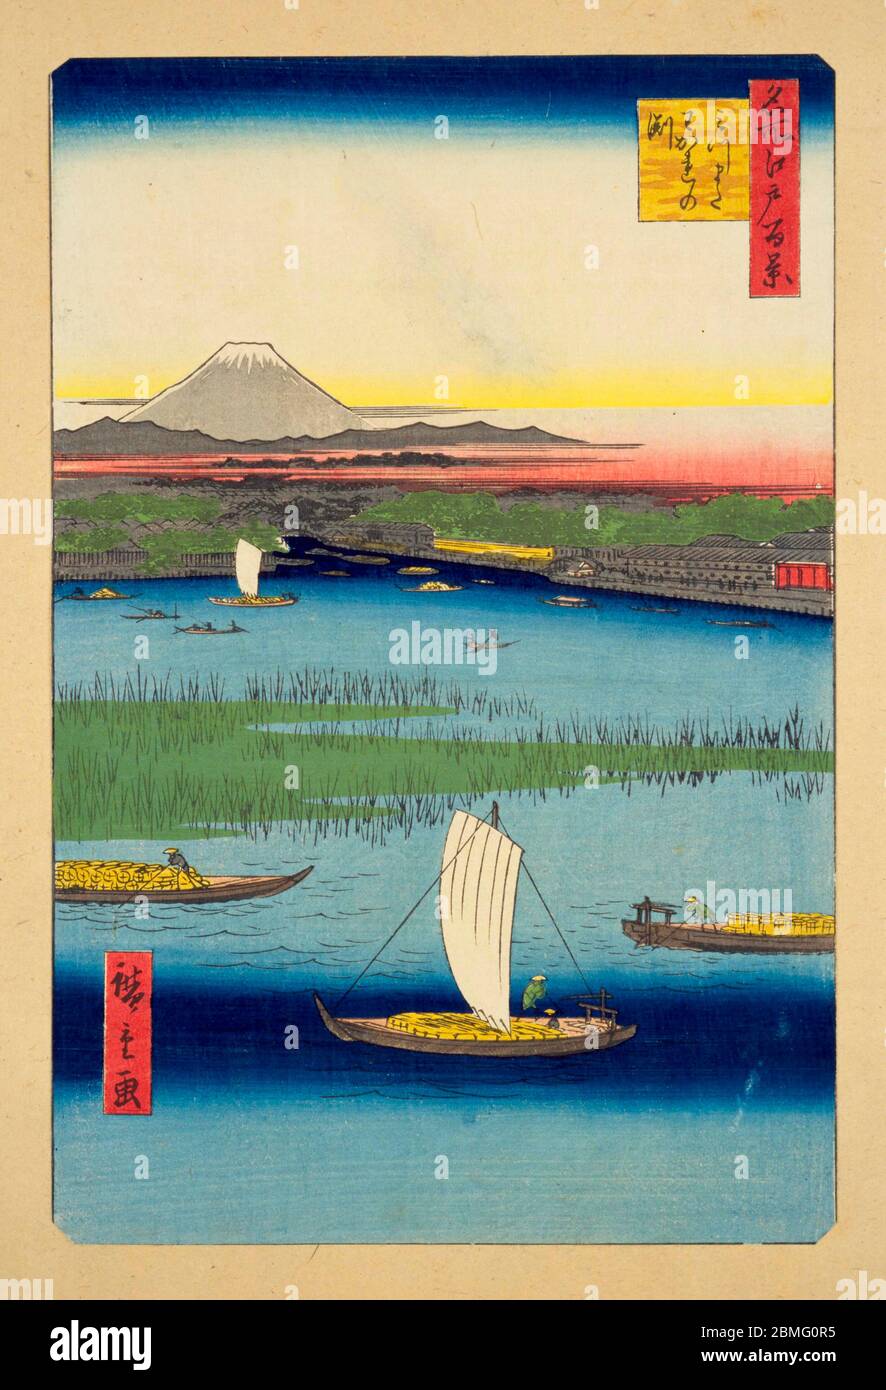 [ 1850er Japan - Sumidagawa River ] - Boote auf dem Sumidagawa River in Edo (aktuelle Tokyo), 1857 (Ansei 4). Im Hintergrund ist der Fuji zu sehen. Dieser Holzschnitt ist Bild 57 in hundert berühmten Ansichten von Edo (名所江戸百景, Meisho Edo Hyakkei), einer Serie von Ukiyoe Künstler Utagawa Hiroshige (歌川広重, 1797–1858) erstellt. Es ist eine von 30 Sommerszenen der Serie. Titel: Mitsumata Wakarenofuchi (みつまたわかれの淵) Vintage Ukiyoe Holzschnitt aus dem 19. Jahrhundert. Stockfoto